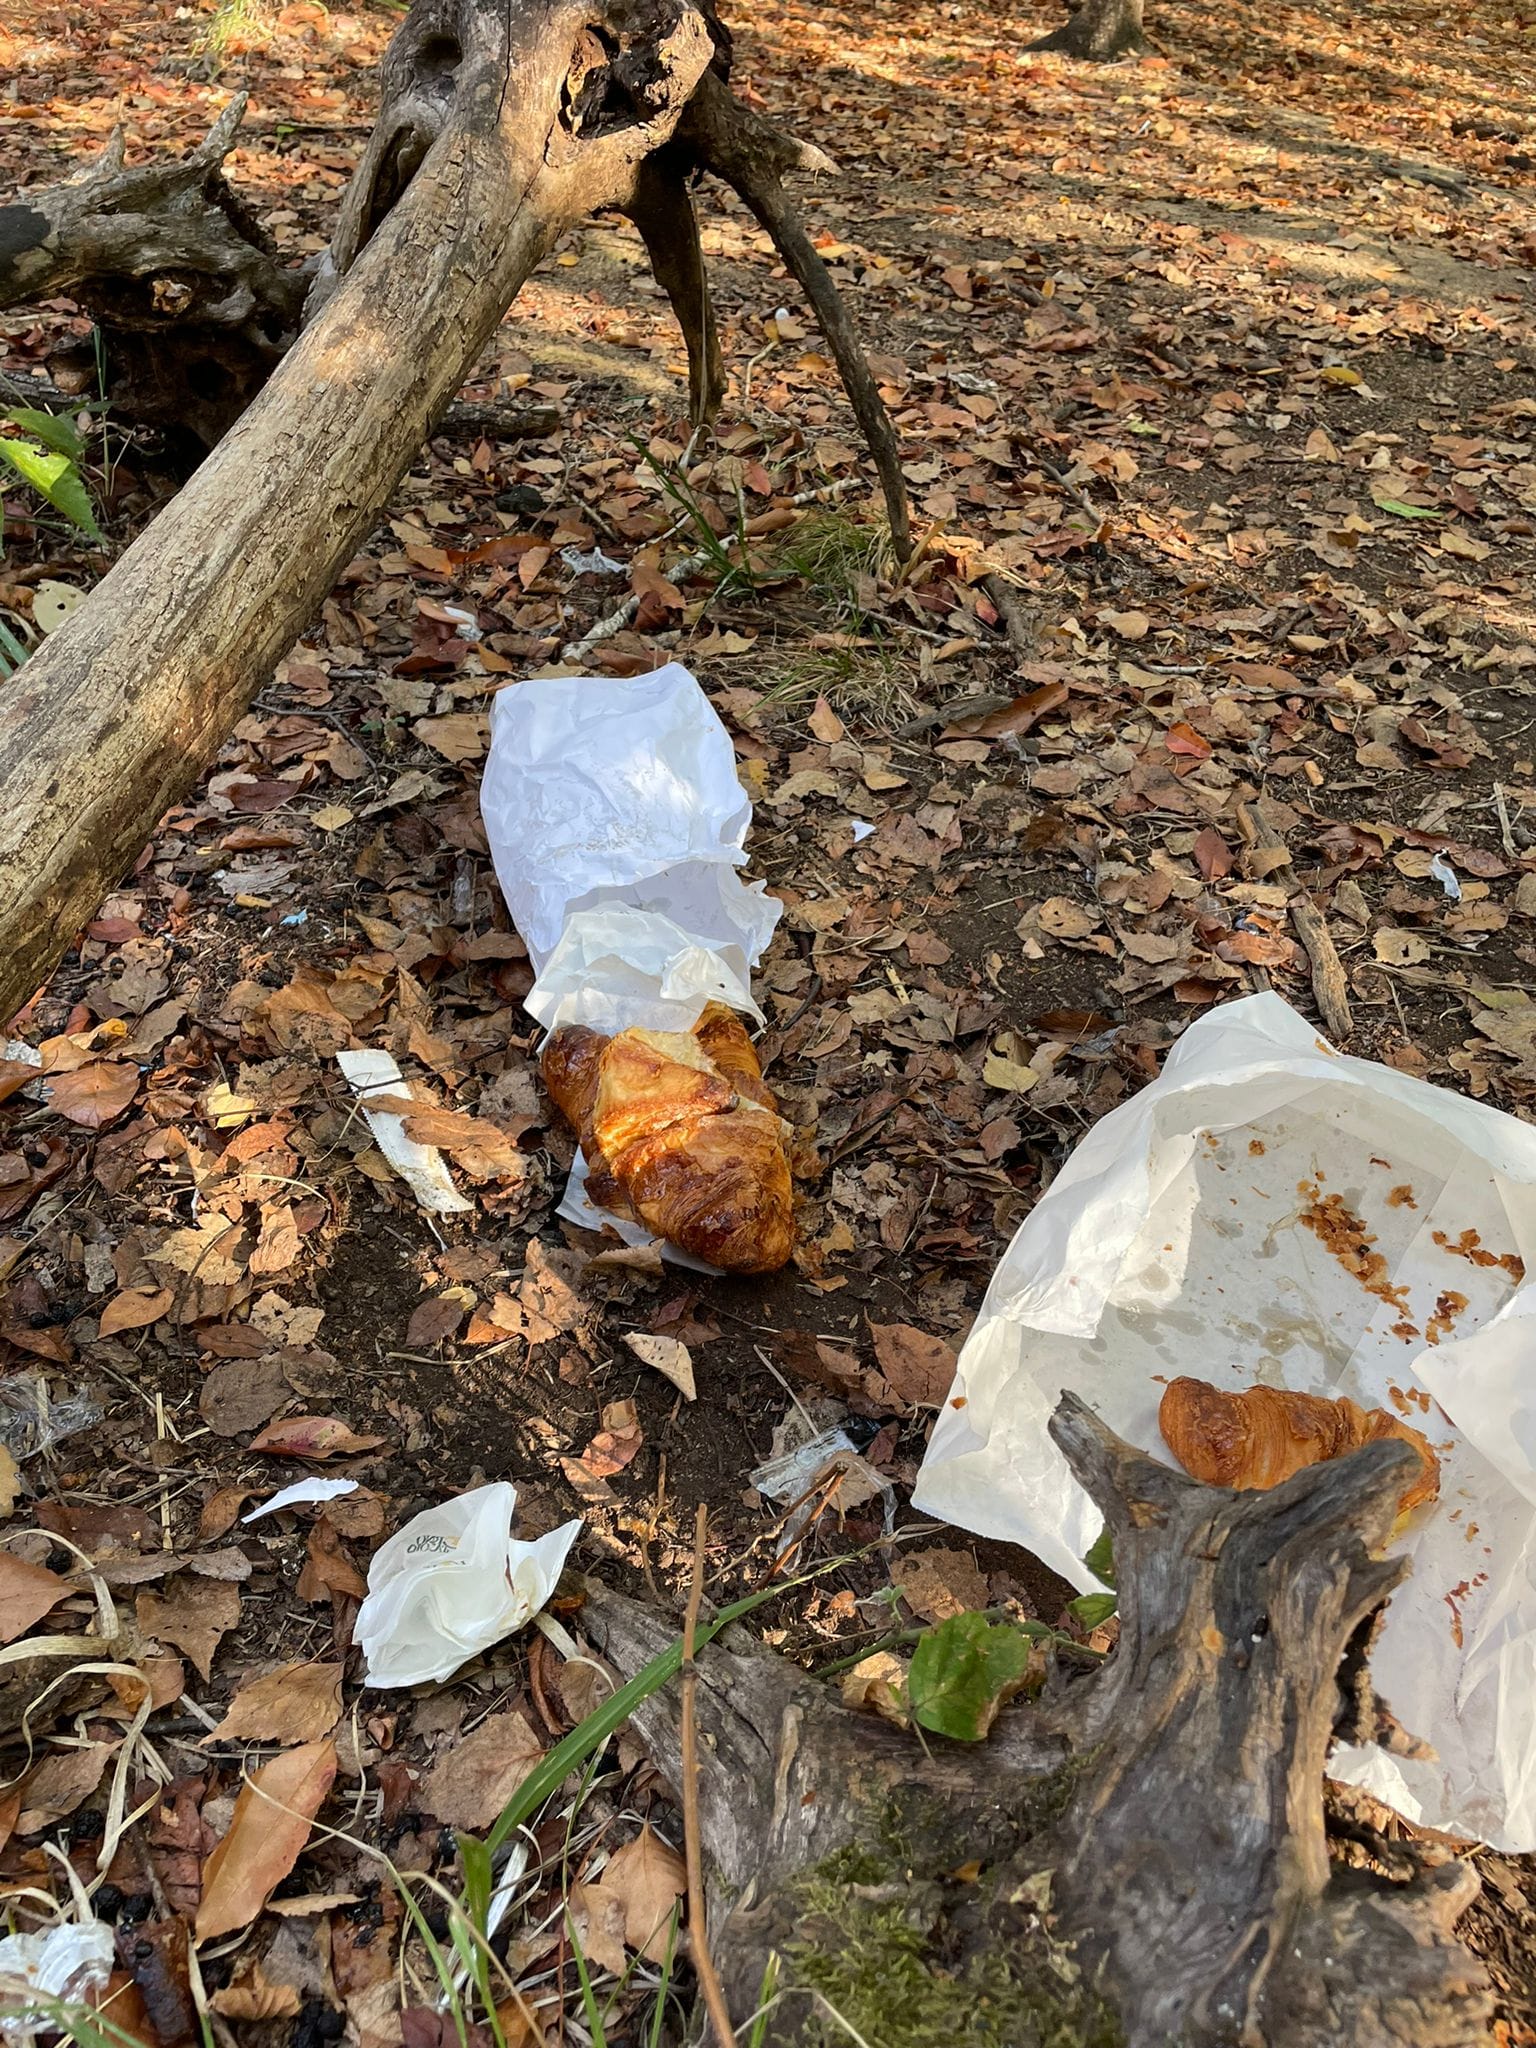 Colazione rovinata agli spacciatori nel bosco, croissant abbandonati